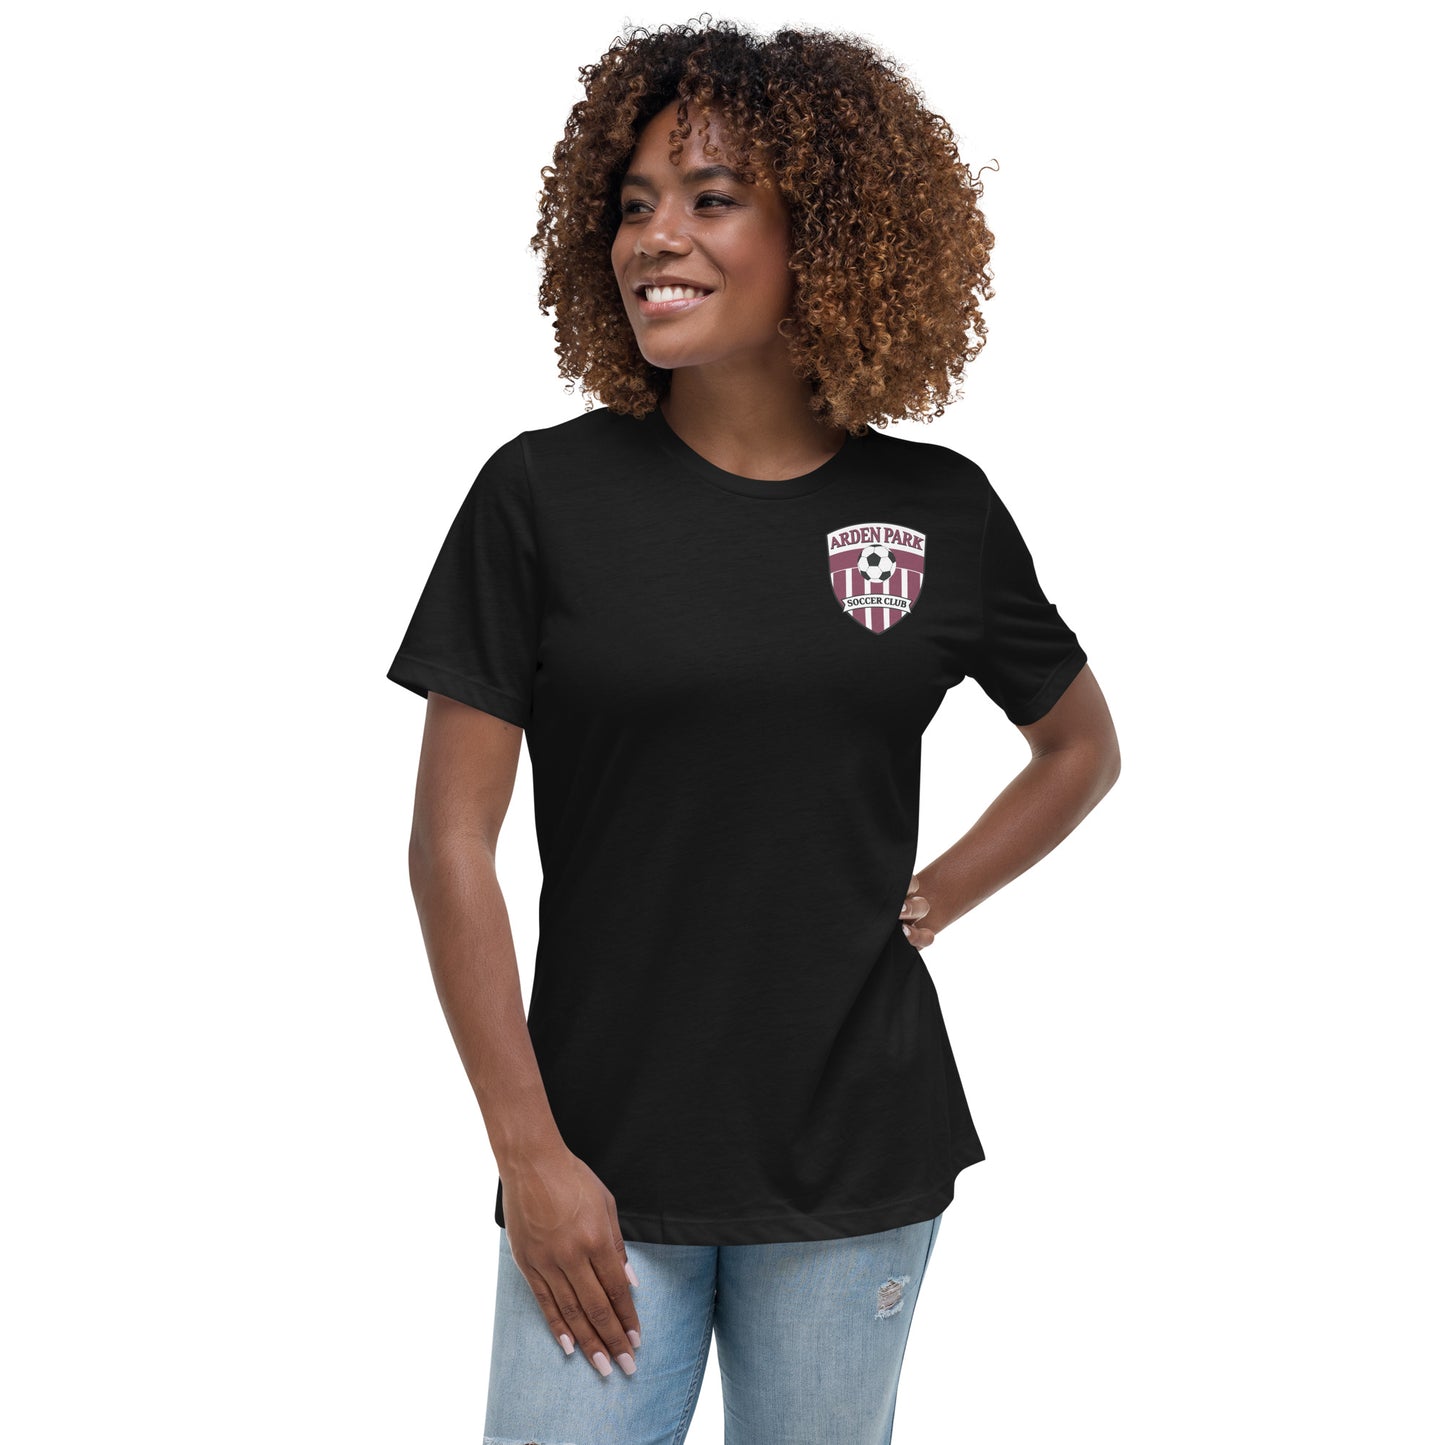 AP Soccer Women's Relaxed T-Shirt